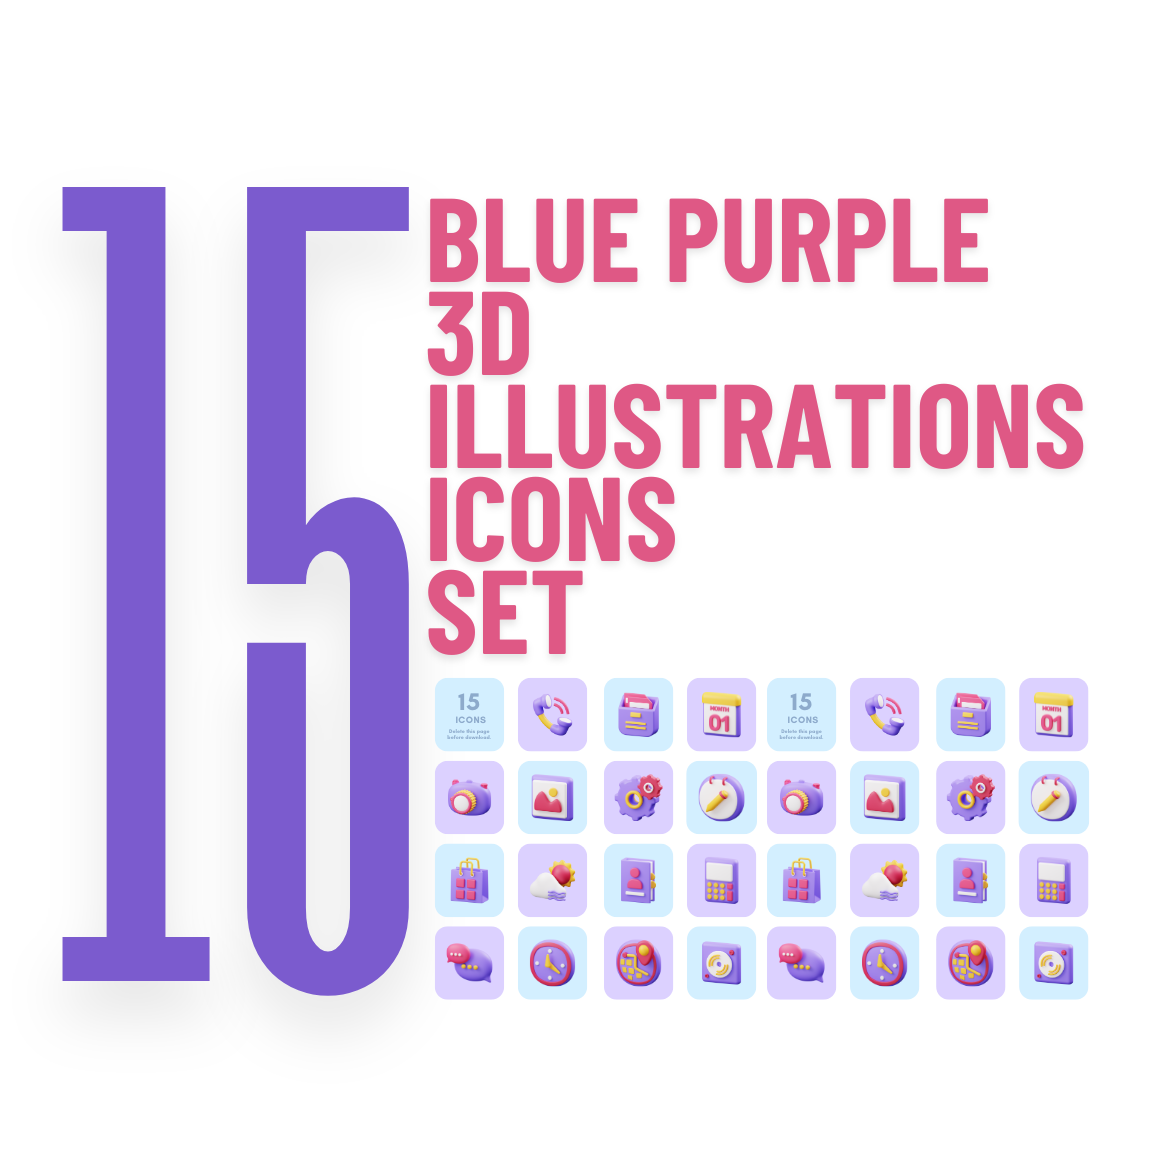 Blue Purple 3D Illustrations Icons Set preview image.